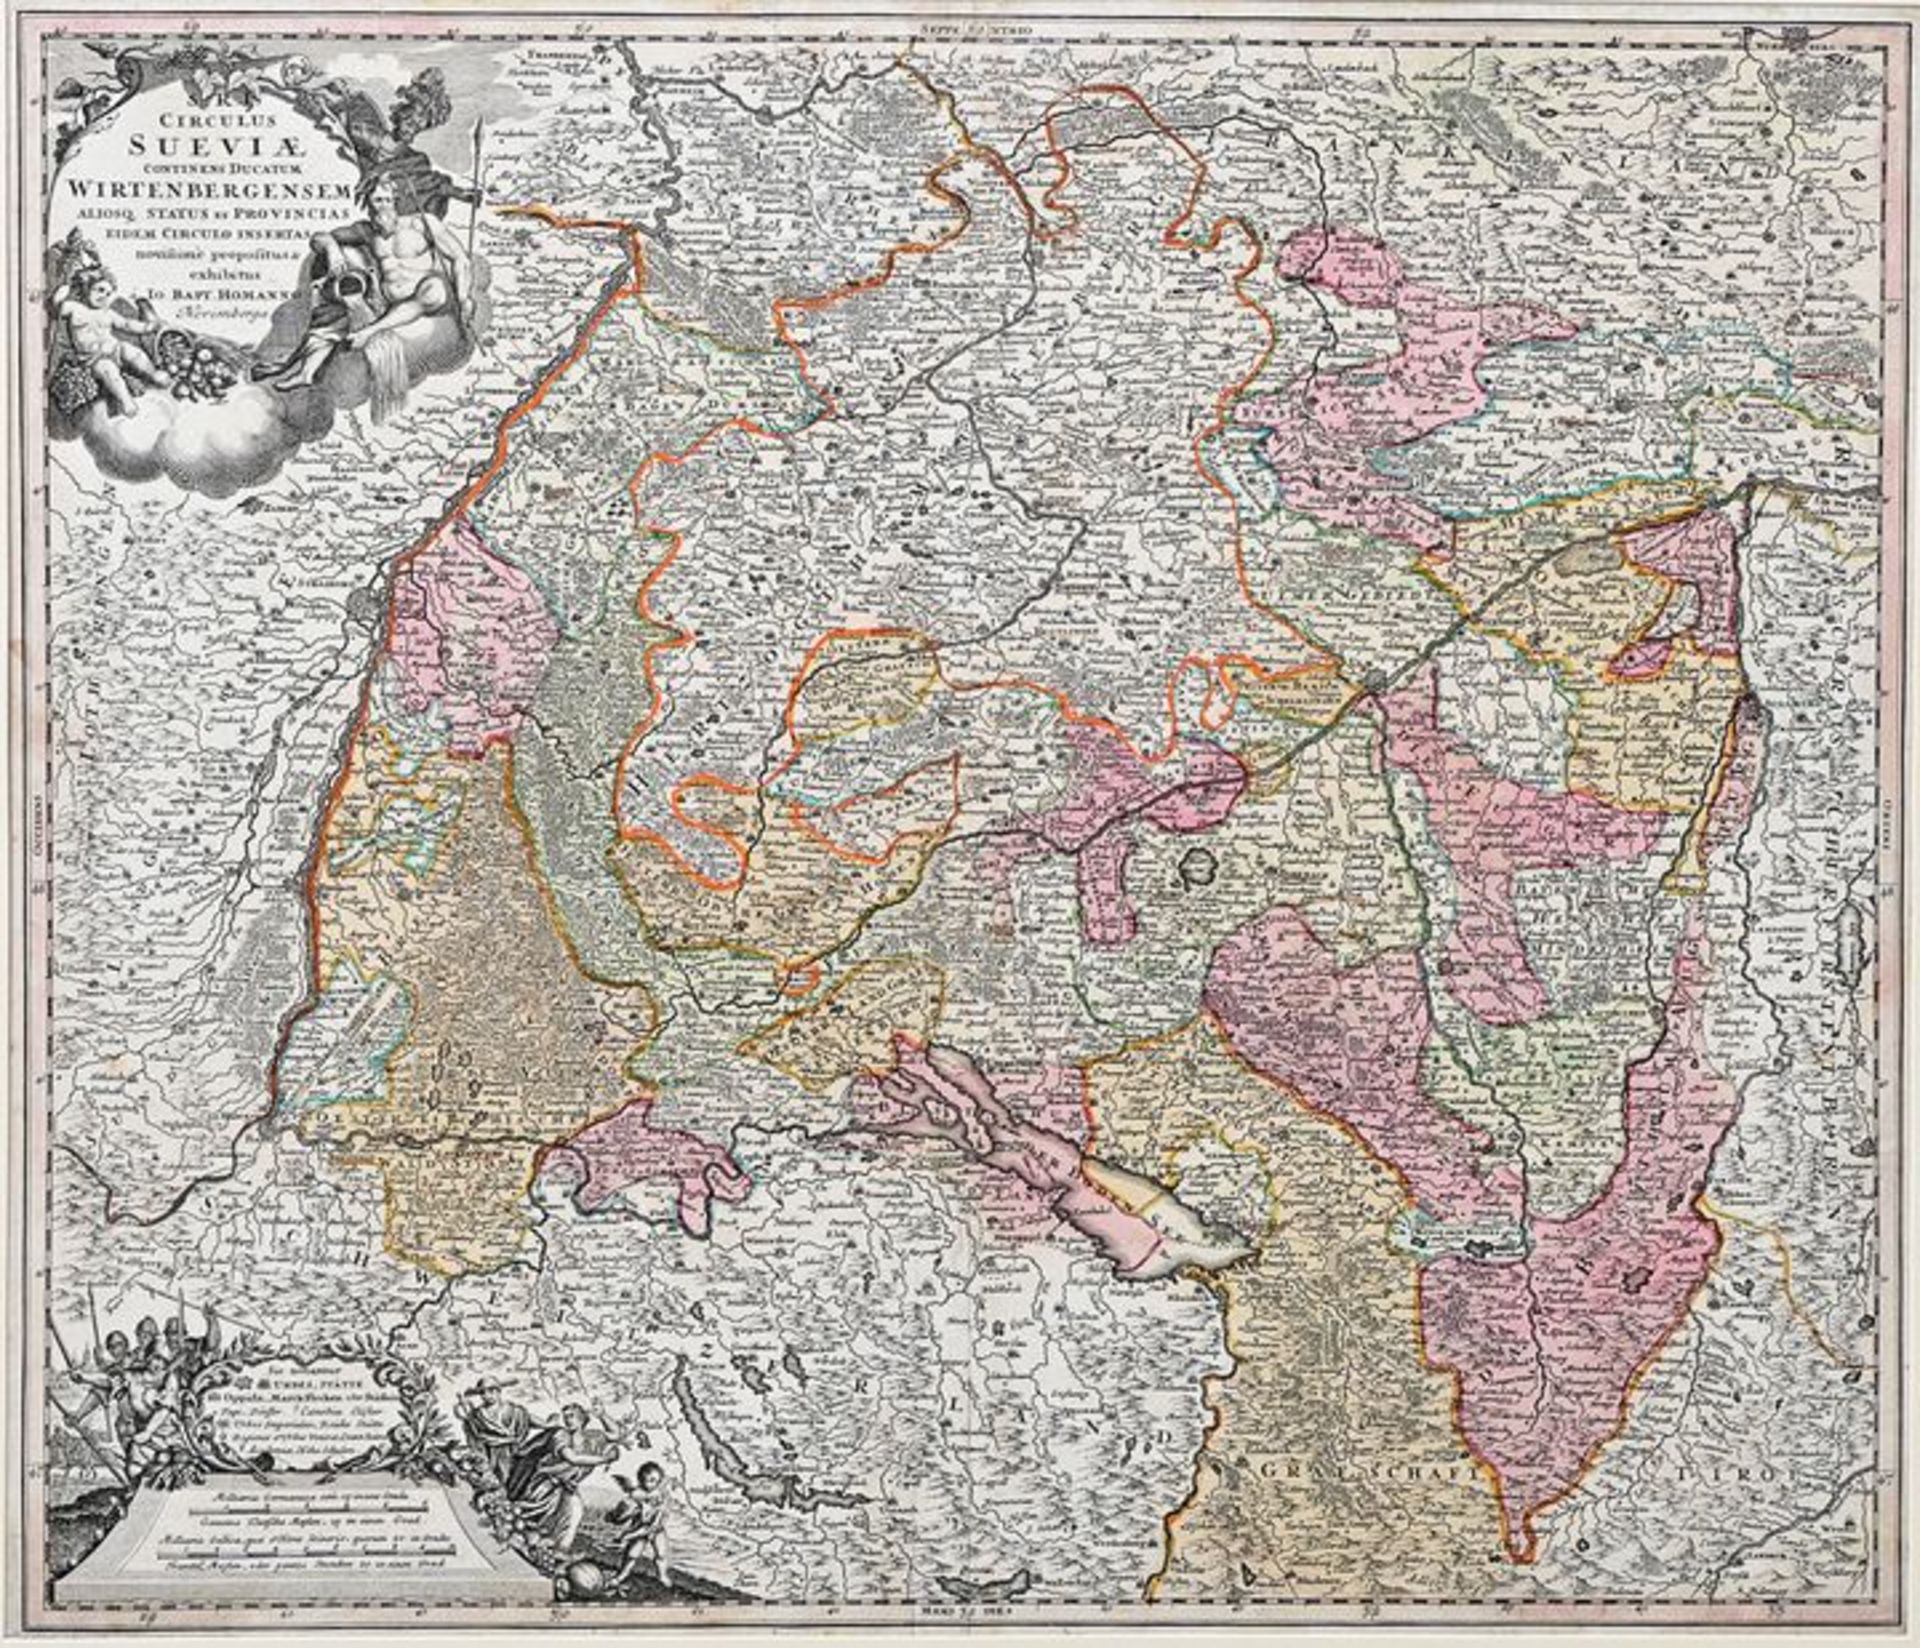 Landkarte, Schwaben / Map of Swabia